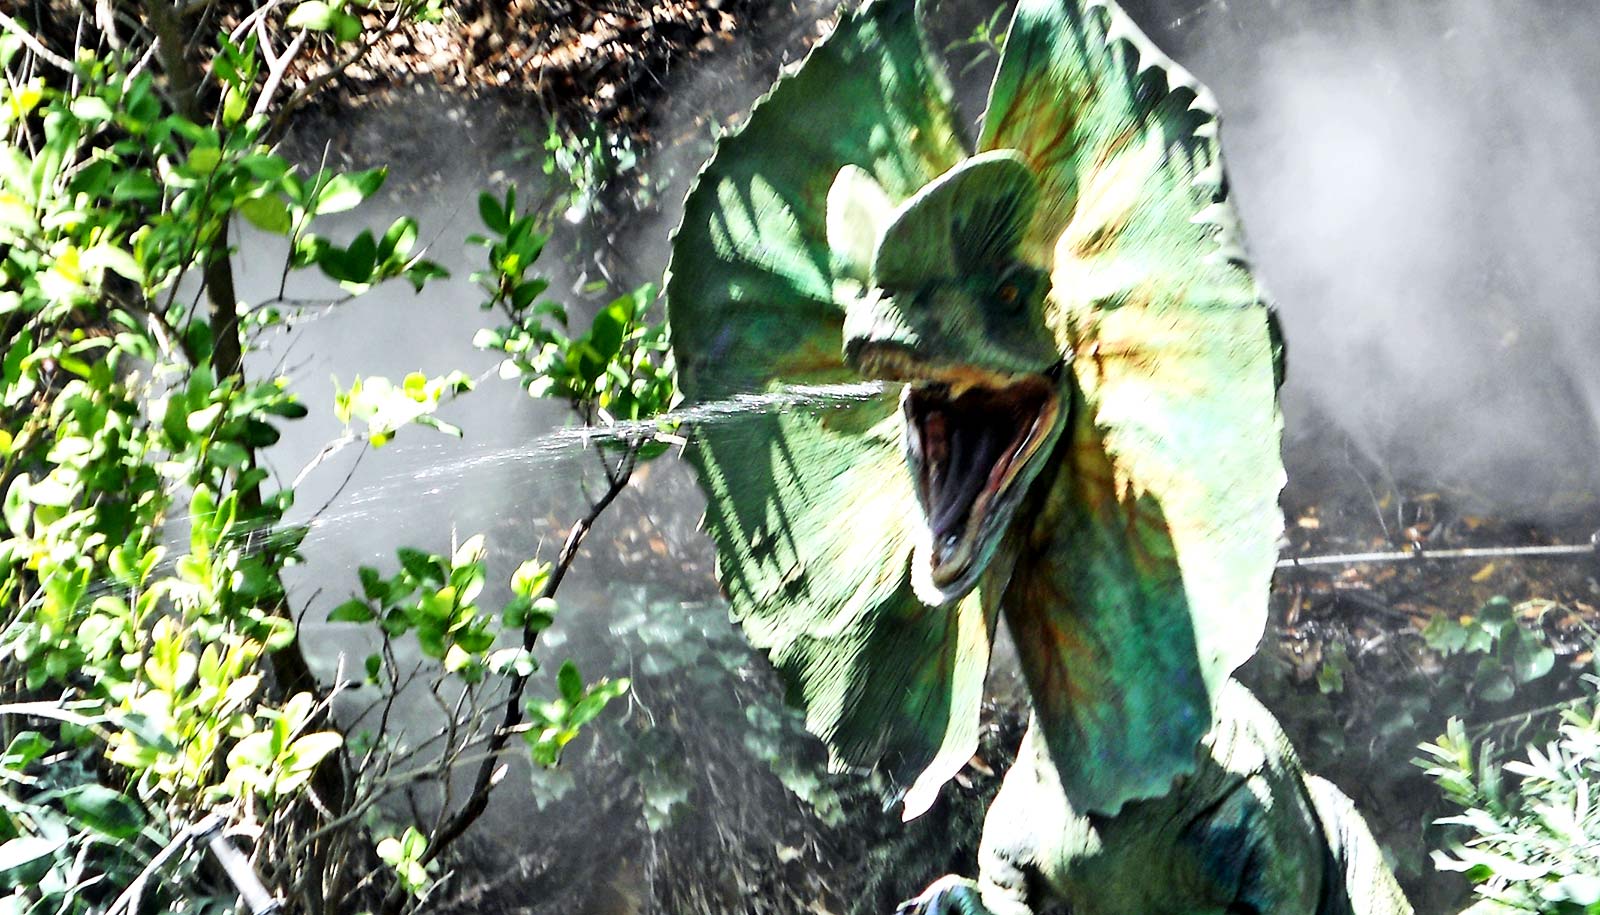 dilophosaurus-jurassic-park-spitting-dinosaur_1600.jpg